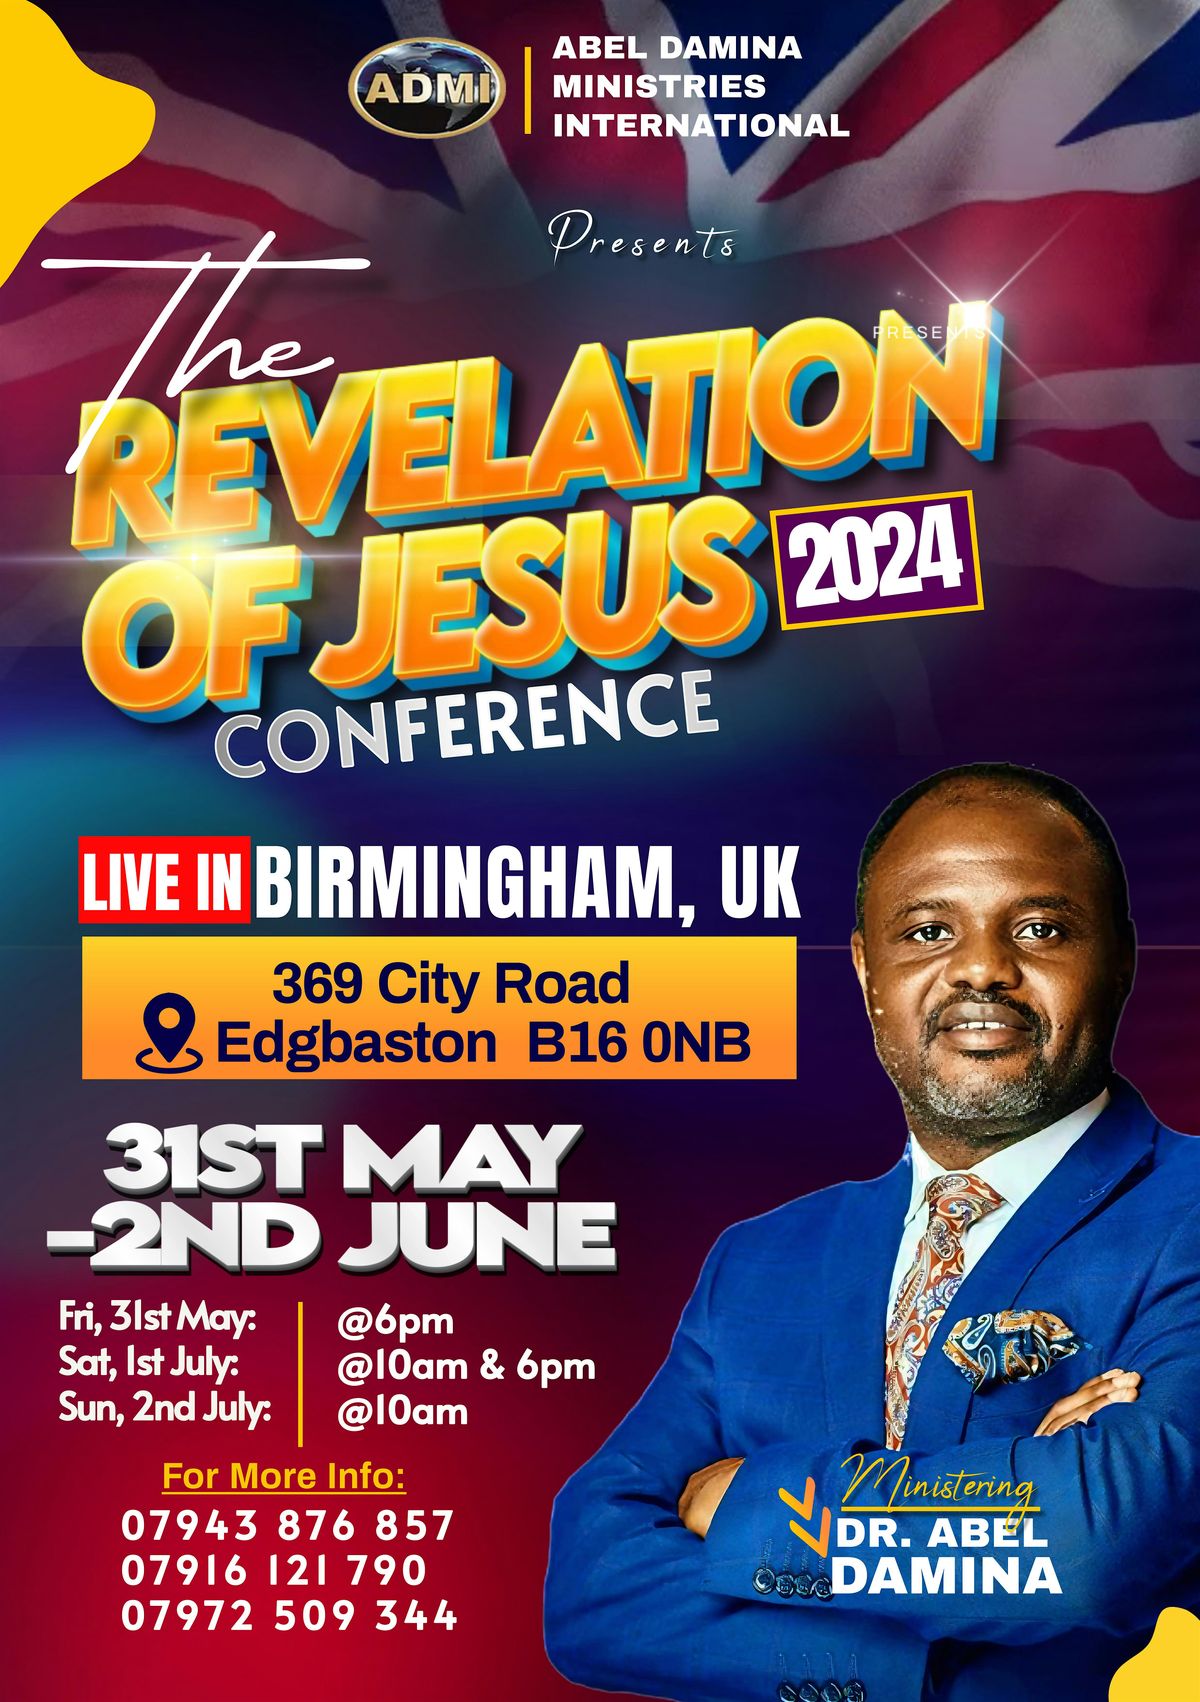 The Revelation of Jesus Conference 2024  with Dr Abel Damina -UK Birmingham